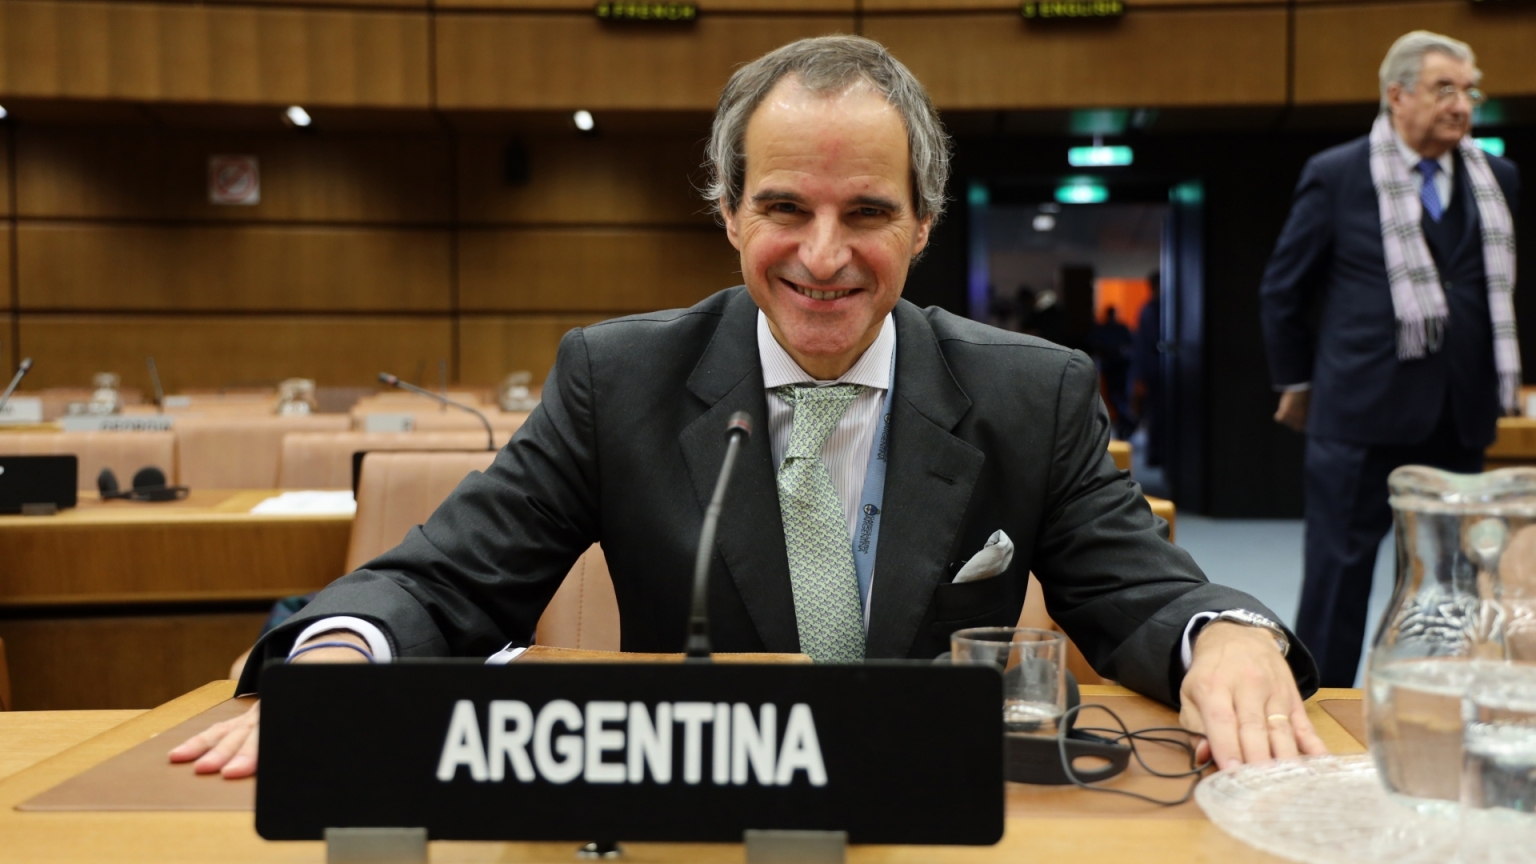 Le diplomate argentin Rafael Mariano Grossi prend la succession de Yukiya Amano au poste de directeur général de l’AIEA.